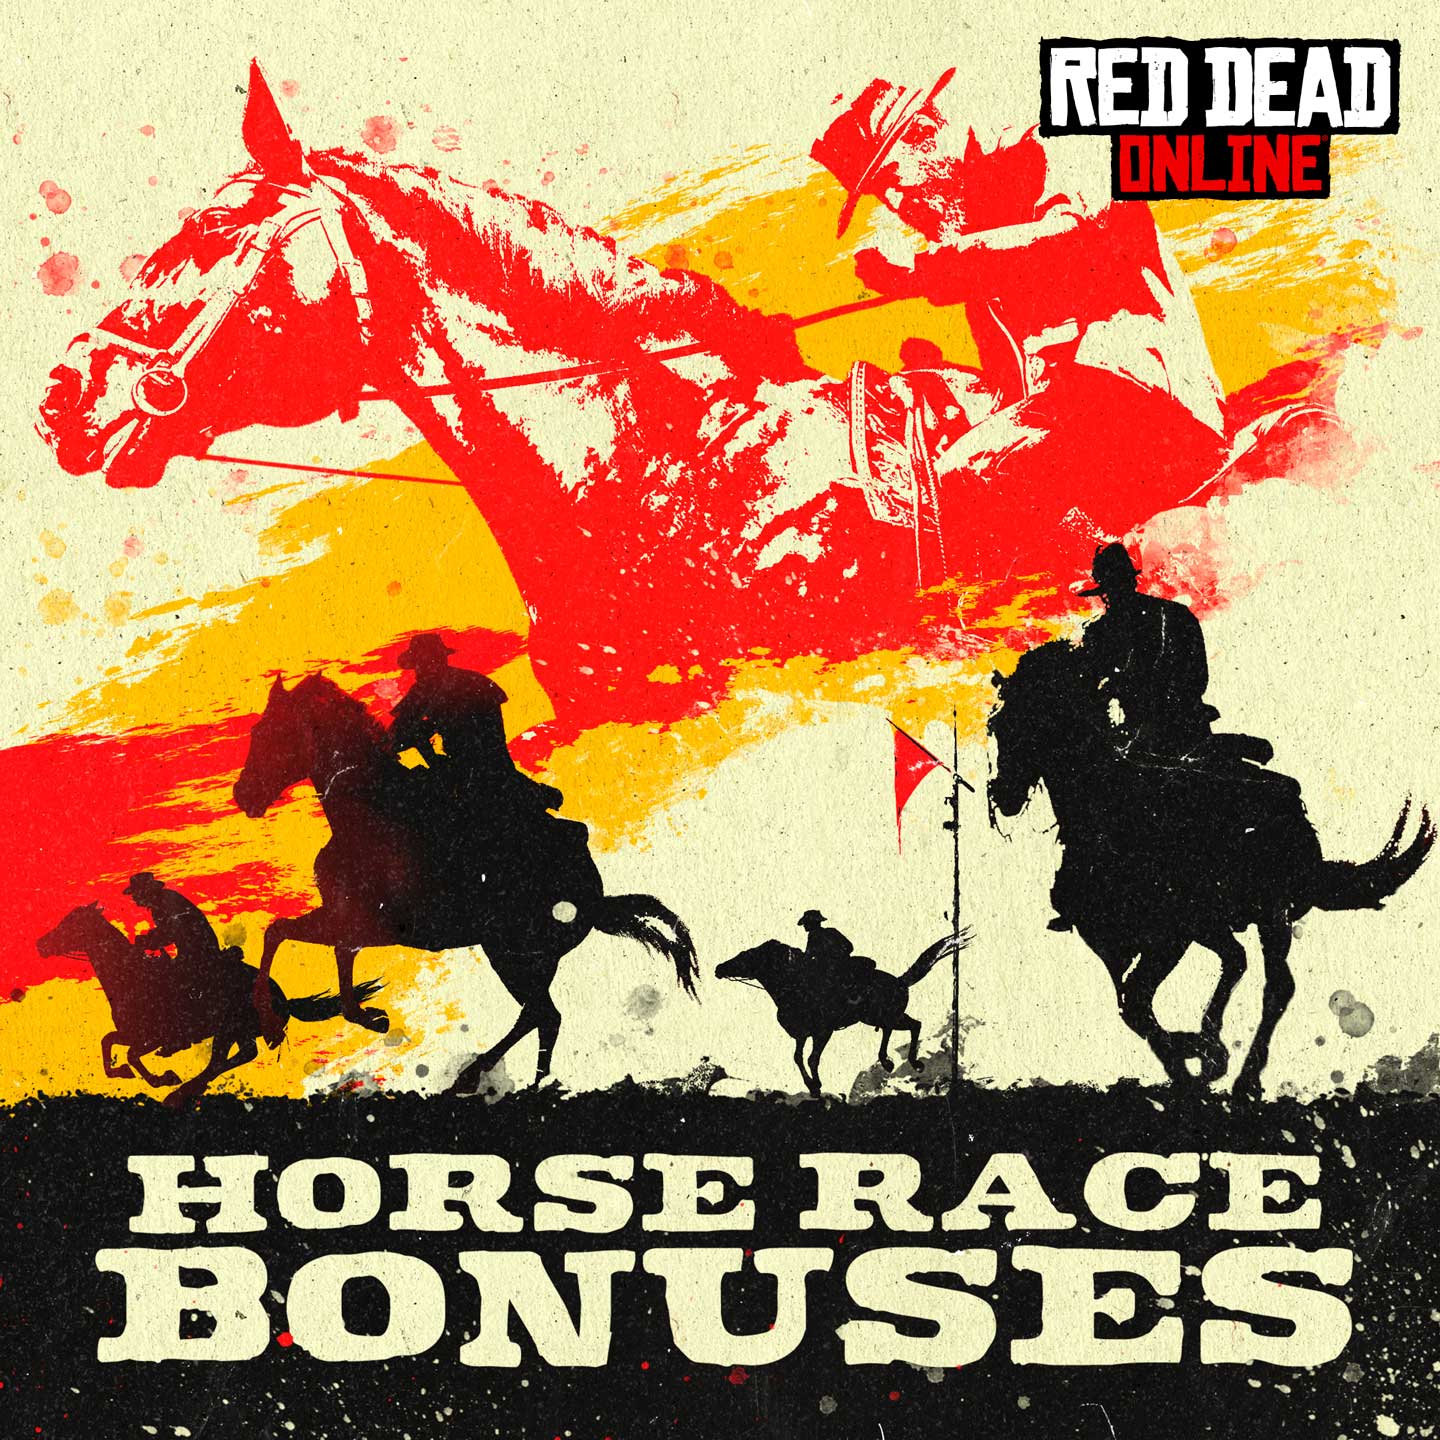 Descubre tesoros en Red Dead Online para recibir bonificaciones y  recompensas para coleccionistas - Rockstar Games